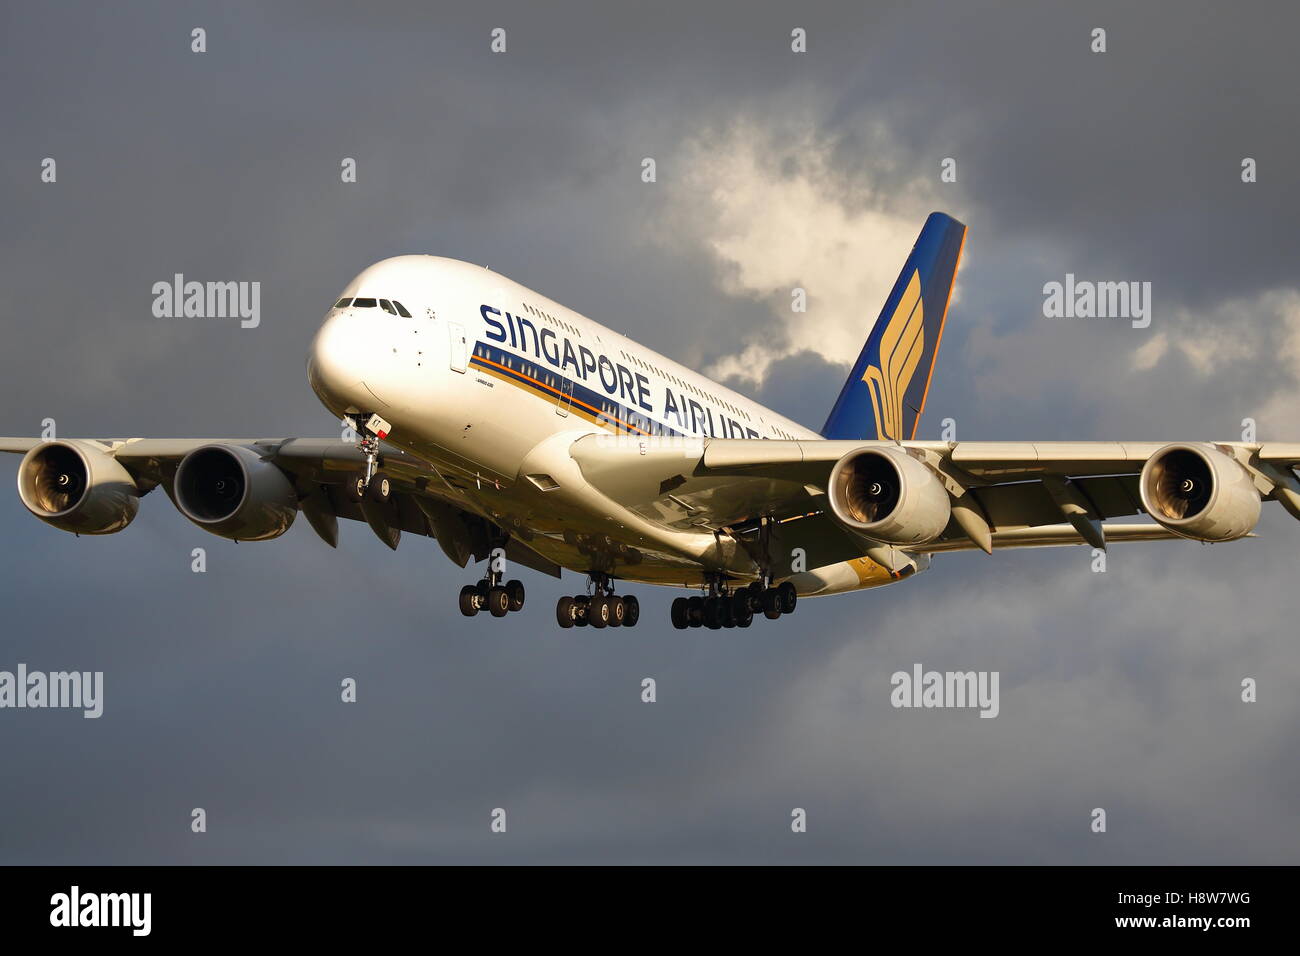 Singapore Airlines Airbus A380-Landung am Flughafen London Heathrow, Vereinigtes Königreich Stockfoto